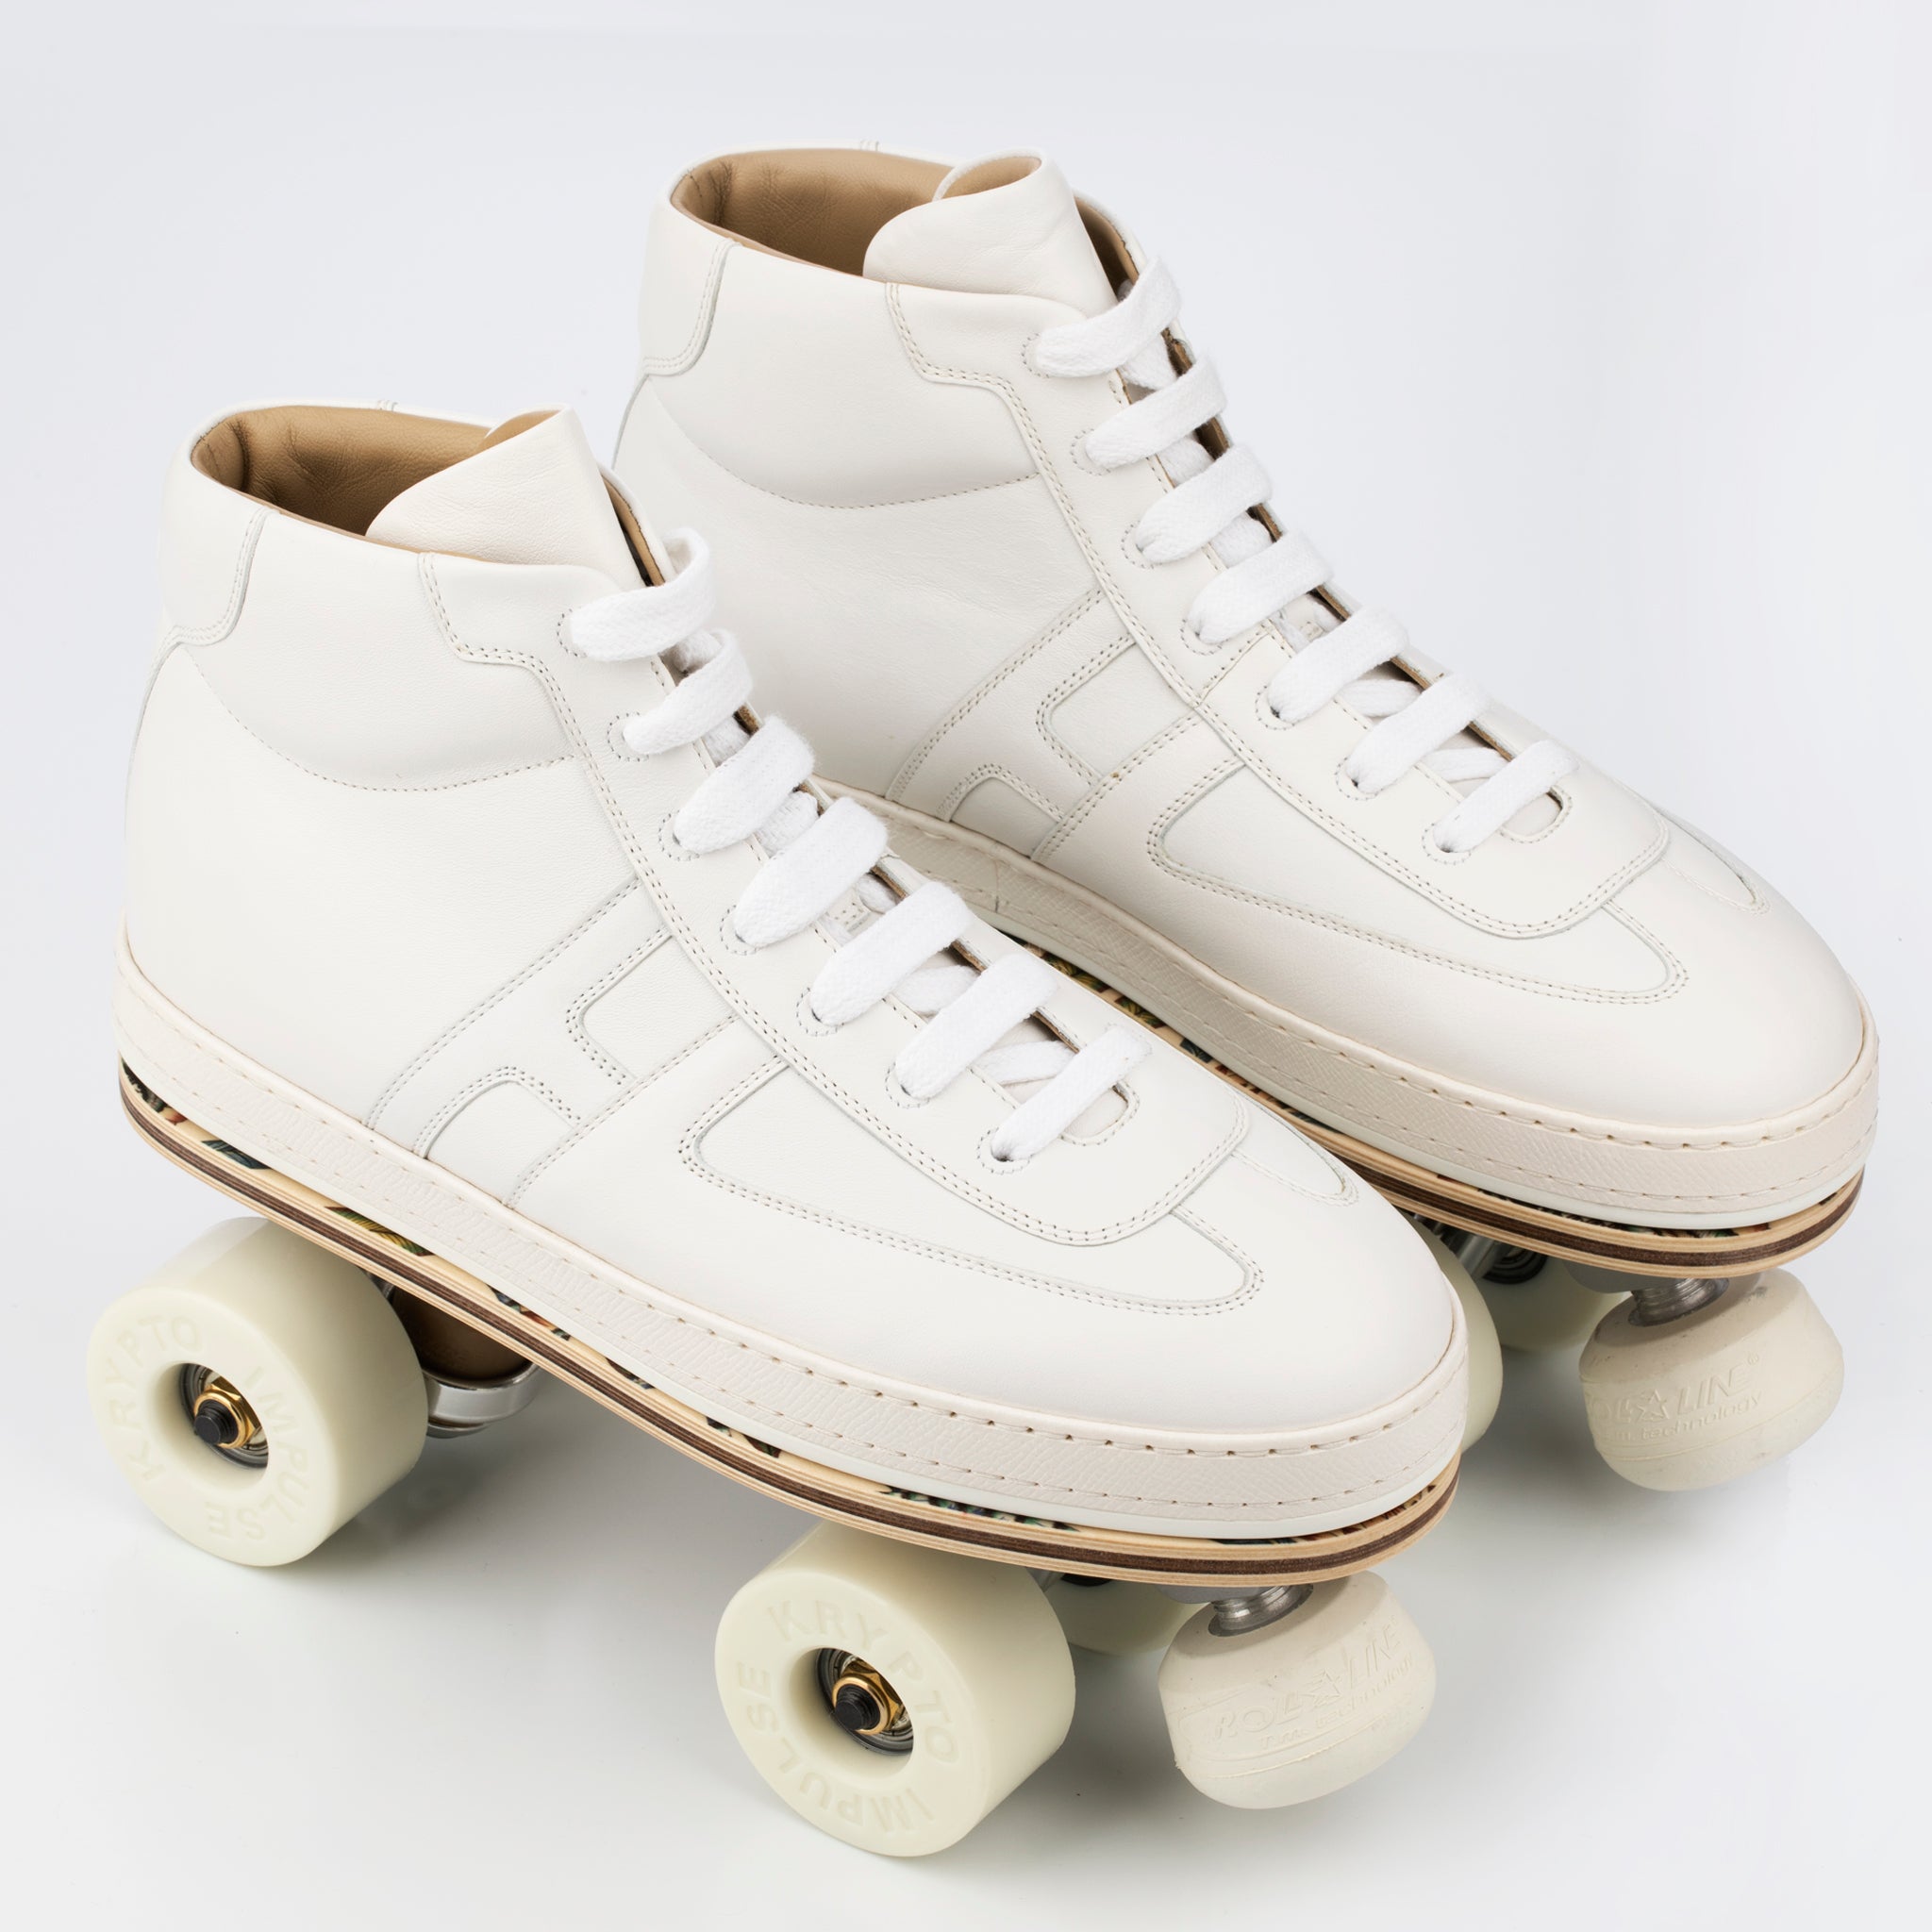 Hermes Savana Dance Roller Skates 41 FR